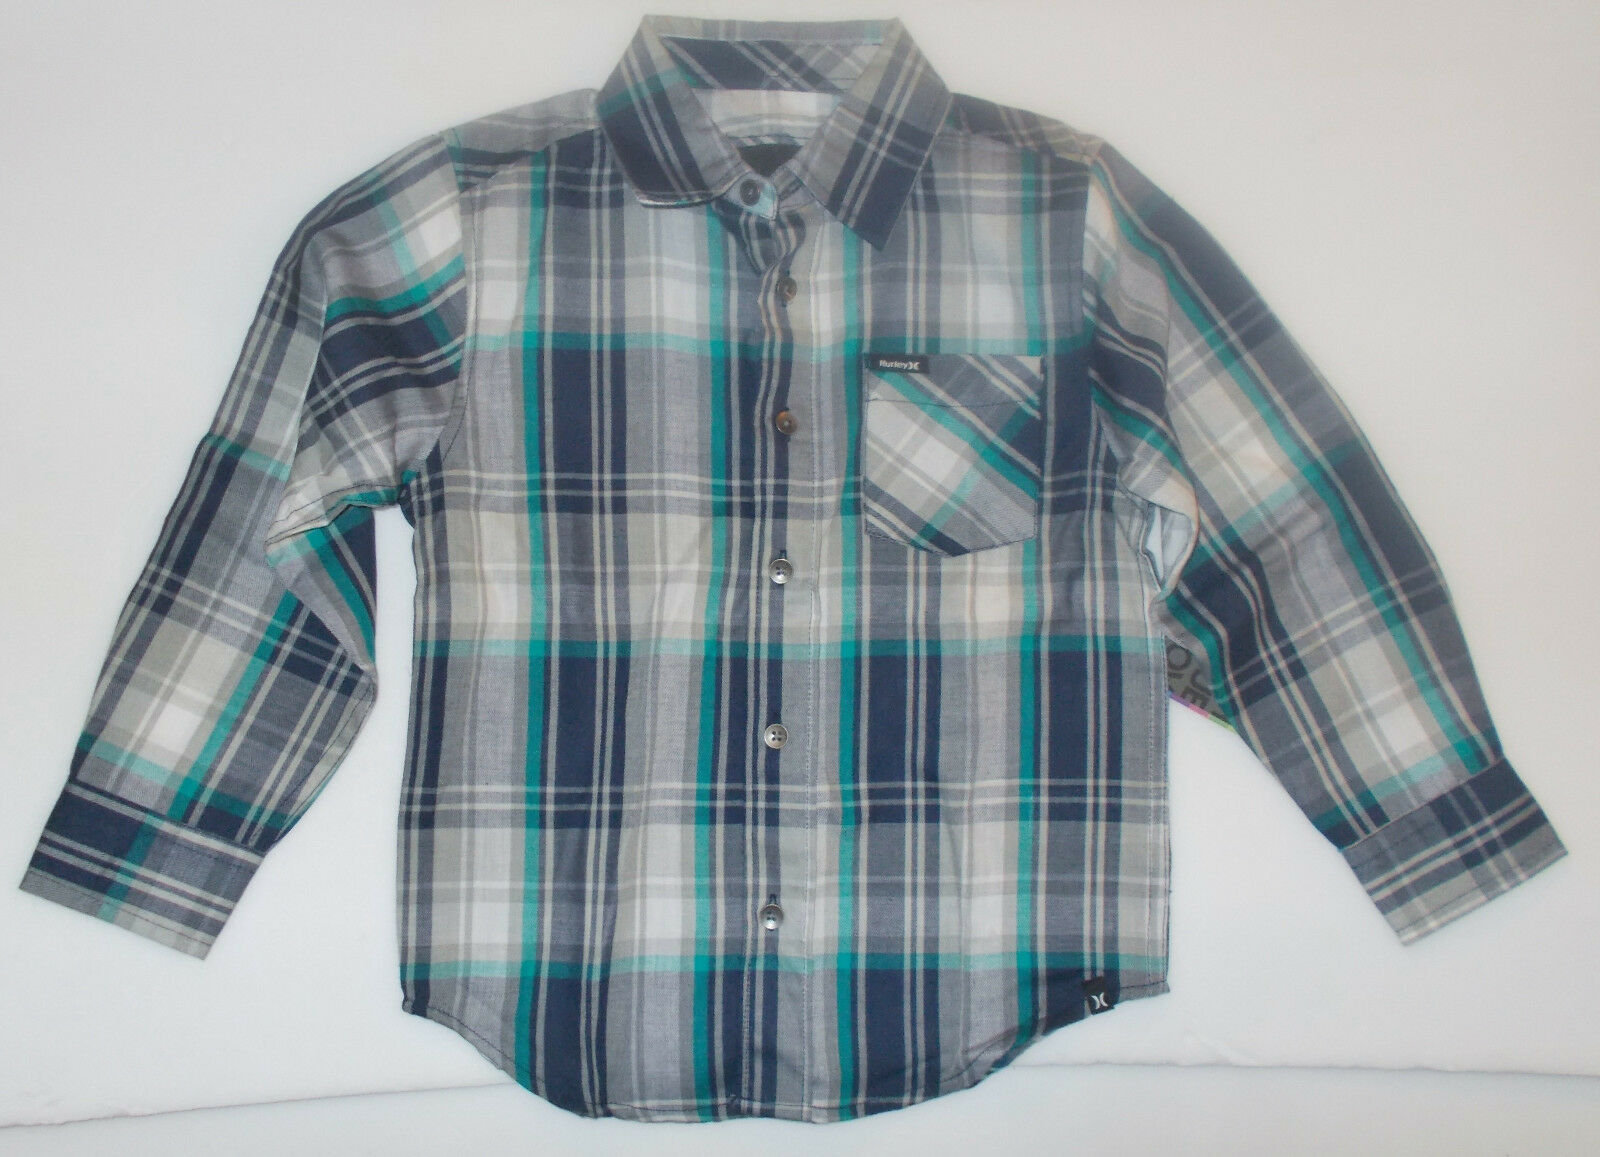 Hurley Boys Long Sleeve Plaid Shirt Gray Black Blue Sizes 4,  NWT - $11.89